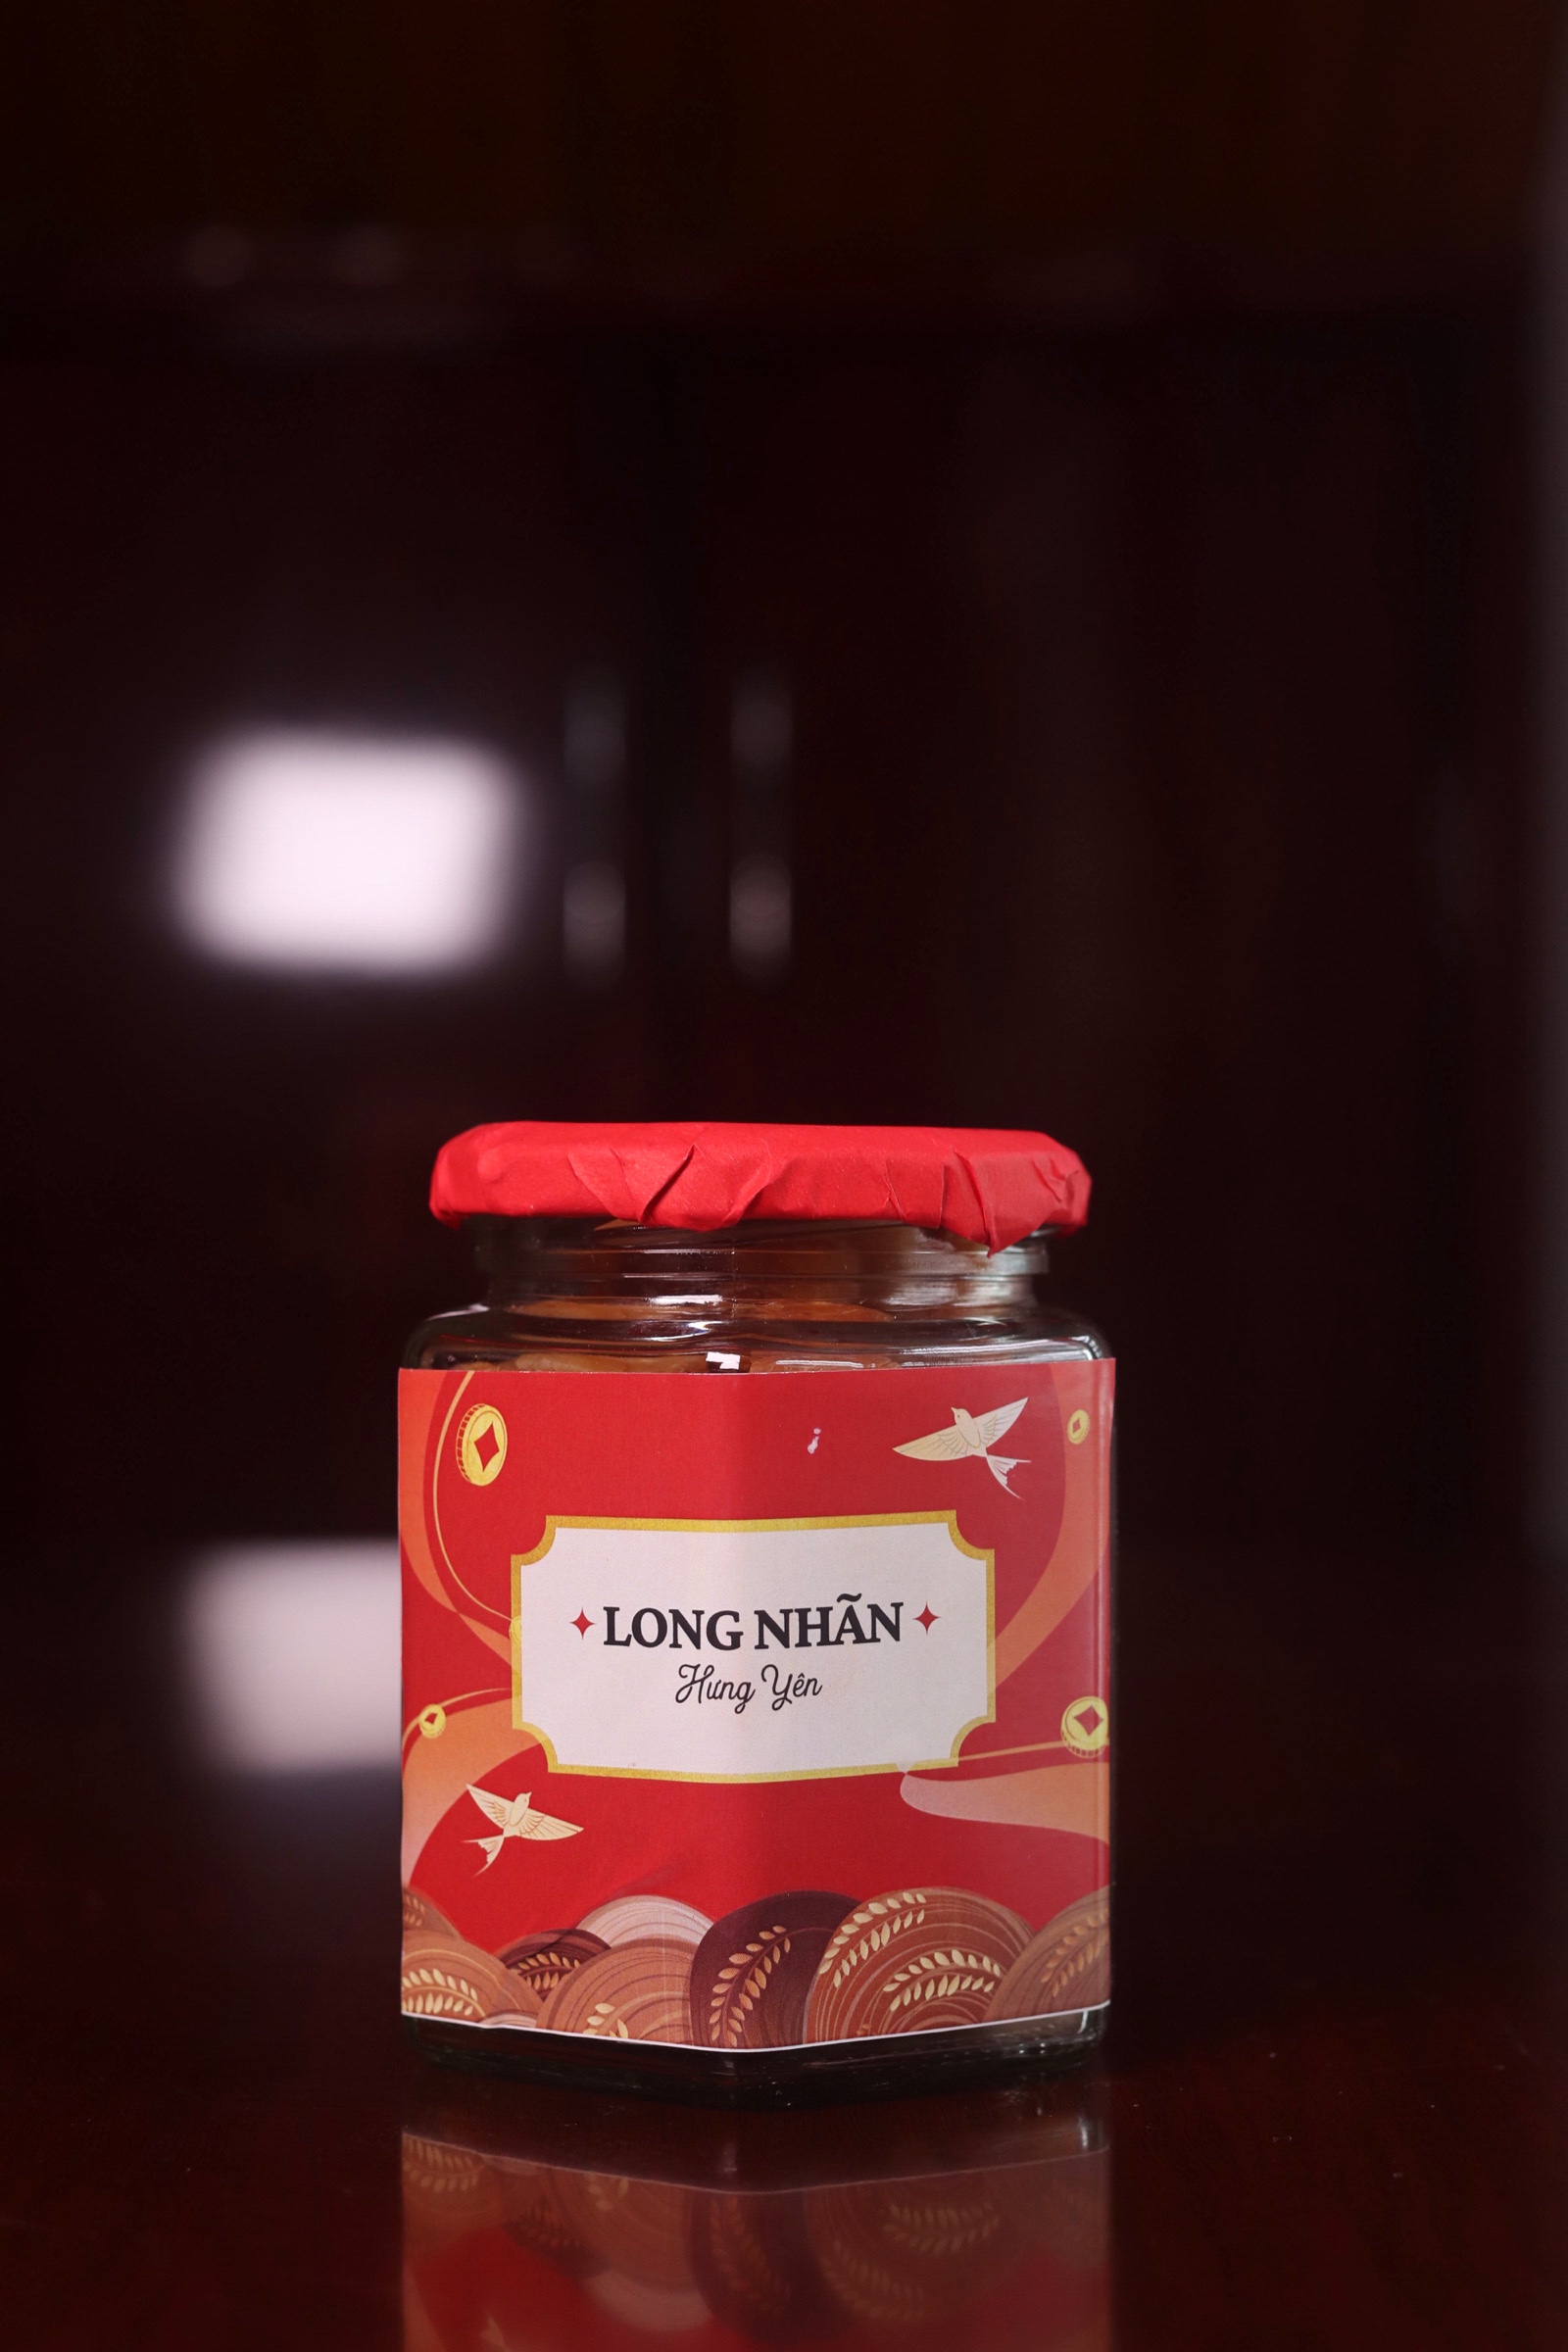 Hình ảnh đặc sản Long nhãn Hưng Yên trong giỏ quà Tết của FoodMap